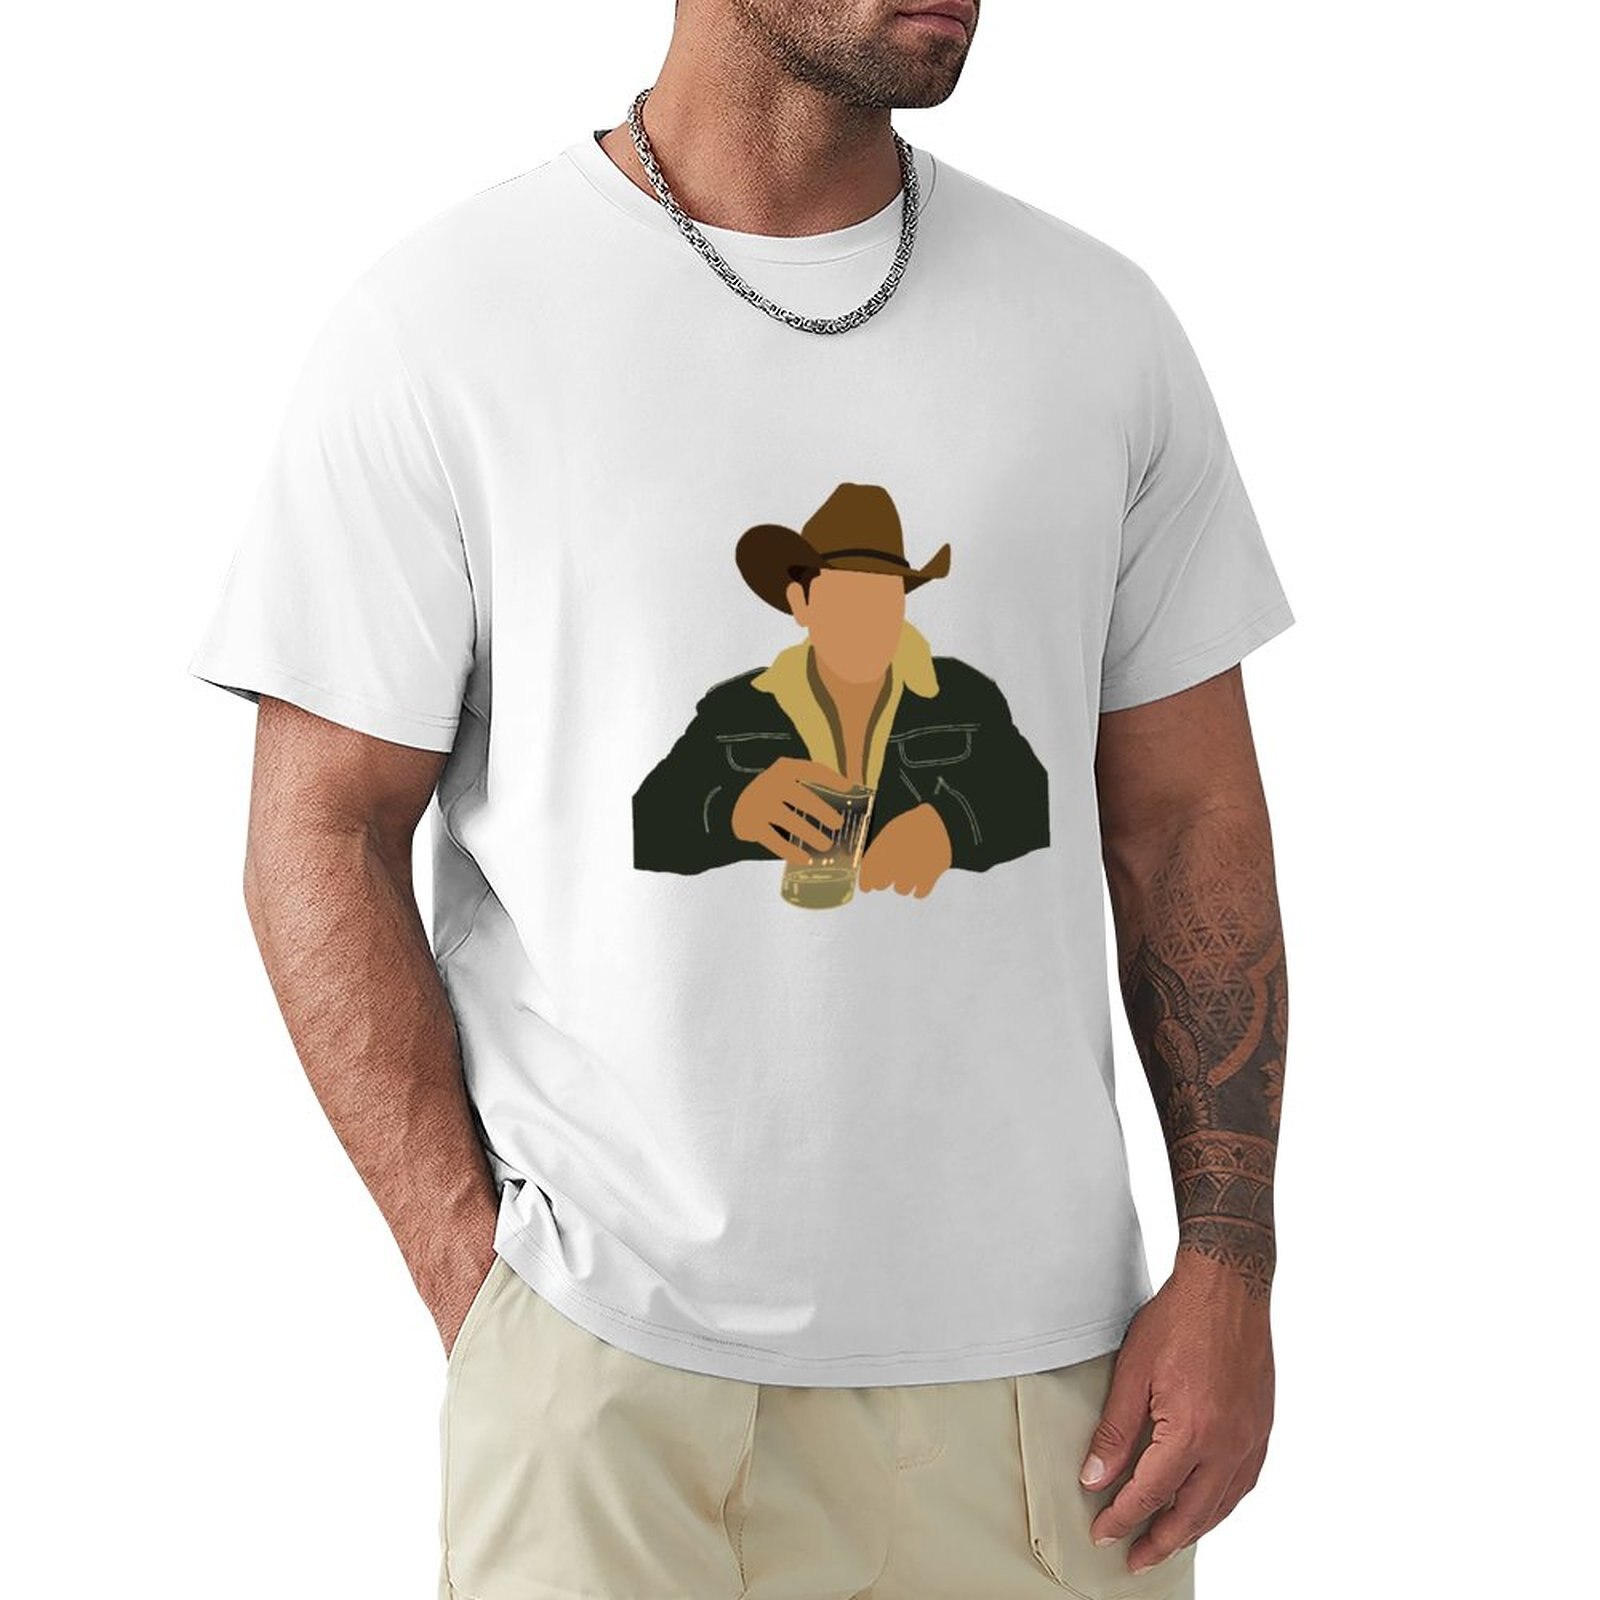 Jon Pardi 남성용 반팔 티셔츠, 일반 티셔츠, 커스텀 티셔츠, 나만의 스웨트 셔츠, 면 티셔츠 디자인